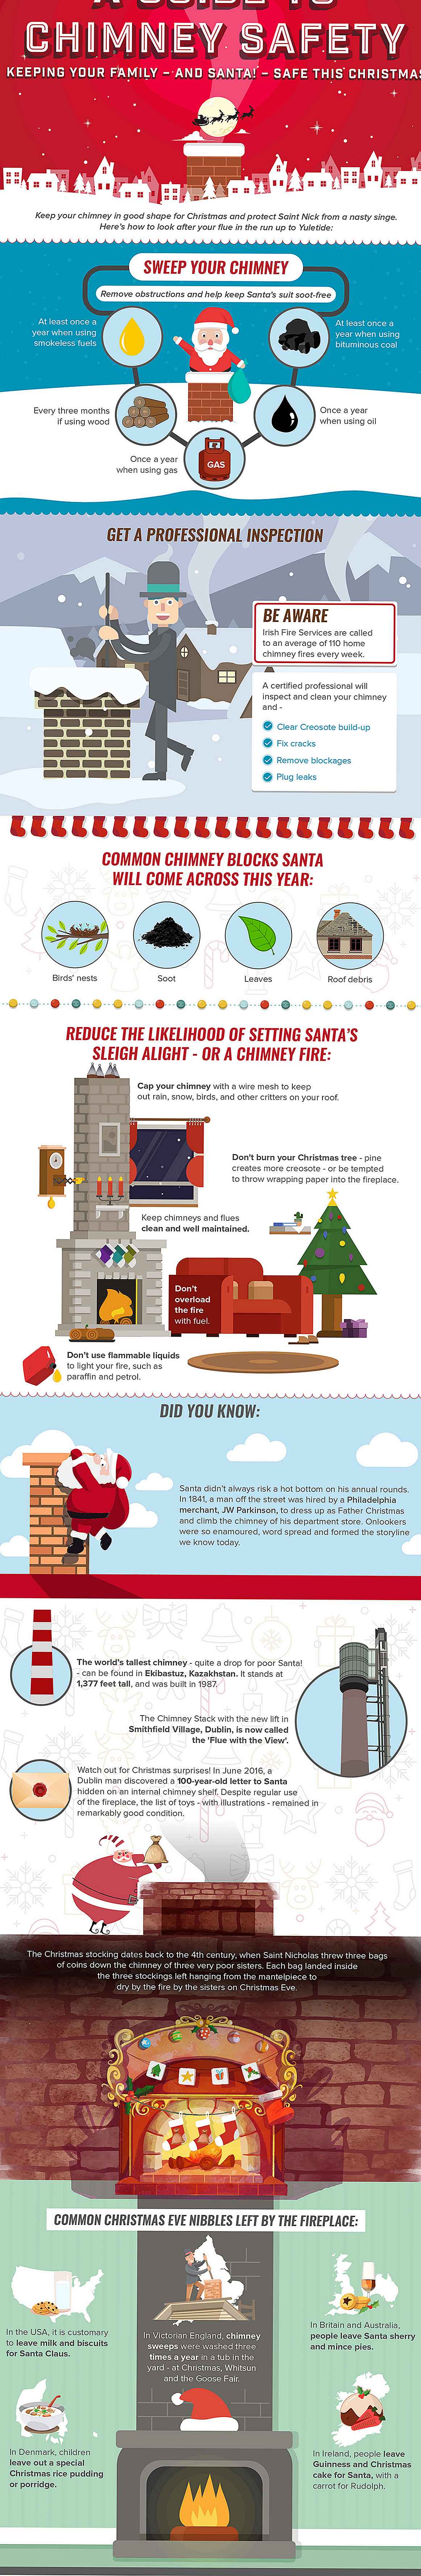 Infografik: Ein Leitfaden für Schornsteinsicherheit, um den Weihnachtsmann und seine Familie sicher zu halten!